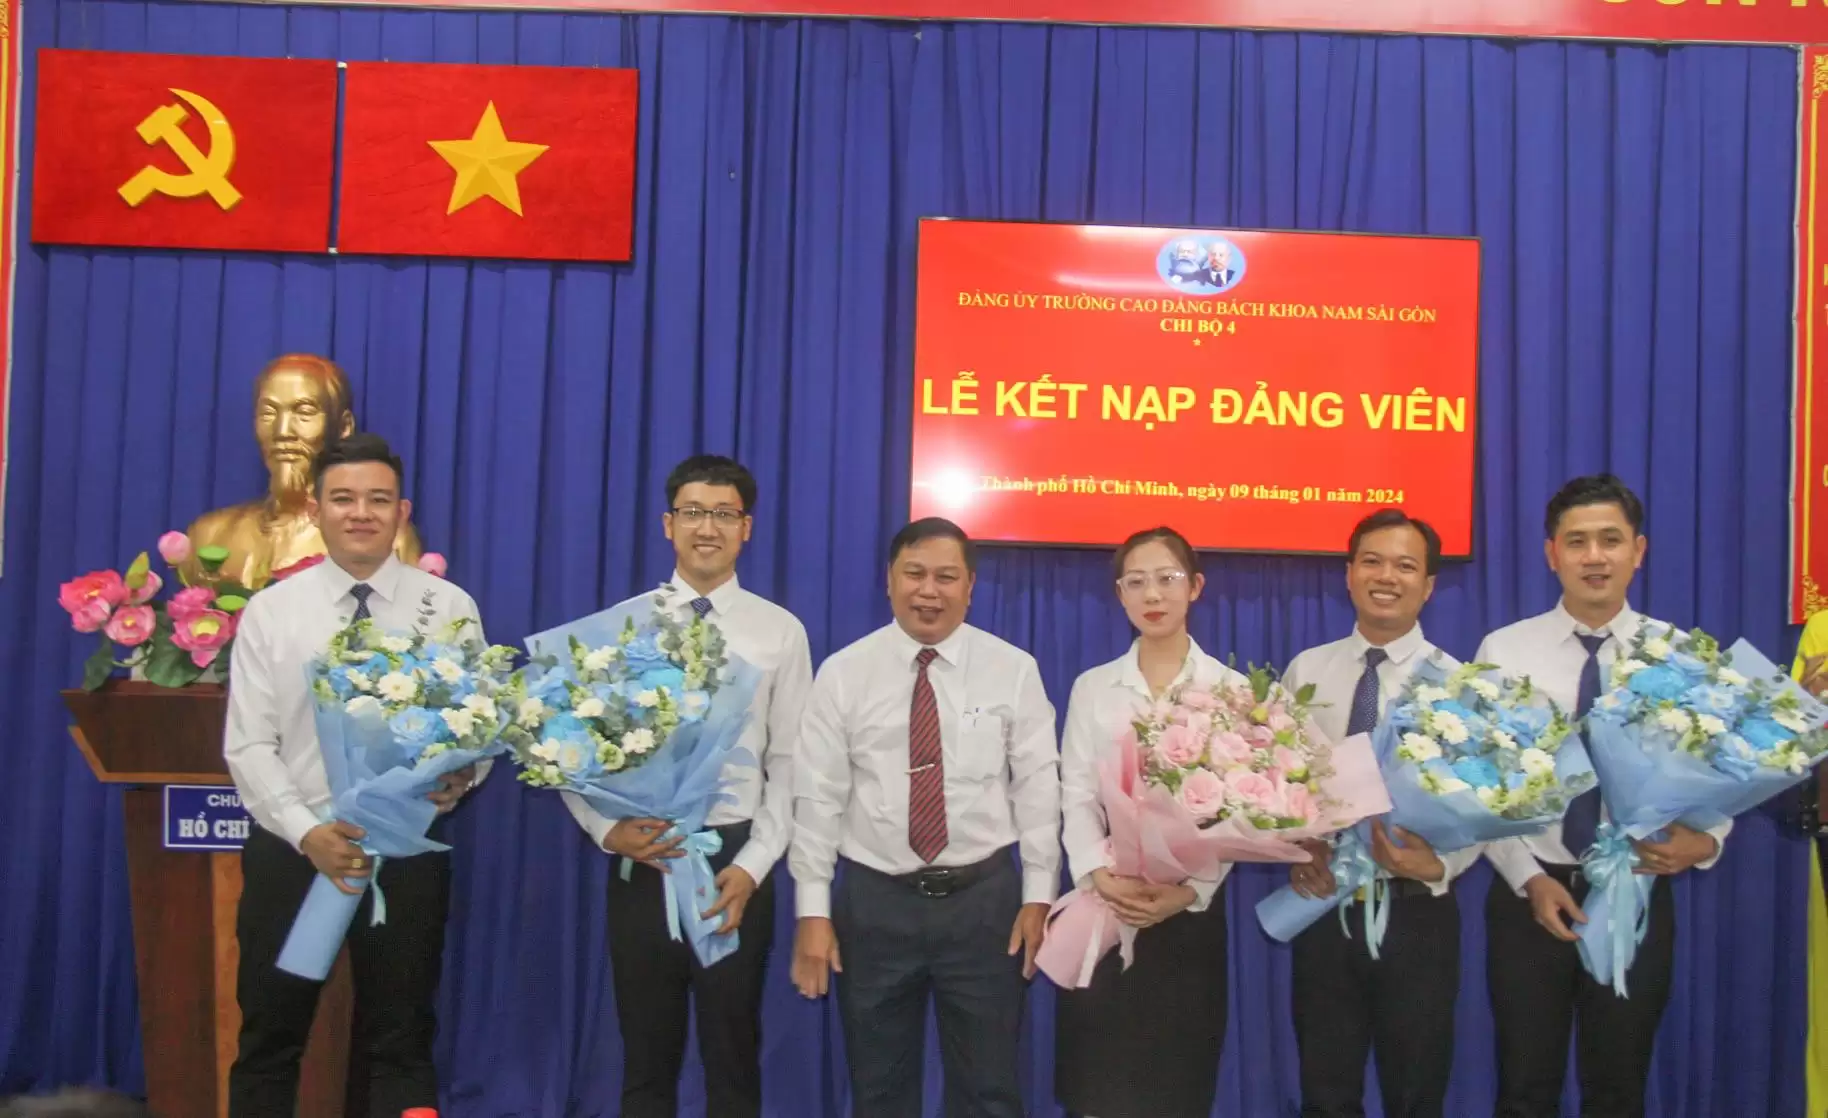 Chương mới bắt đầu “Lễ kết nạp Đảng cho sinh viên tại Đảng ủy Trường Cao đẳng Bách khoa Nam Sài Gòn” – Hành trình chính trị mới đầy ý nghĩa